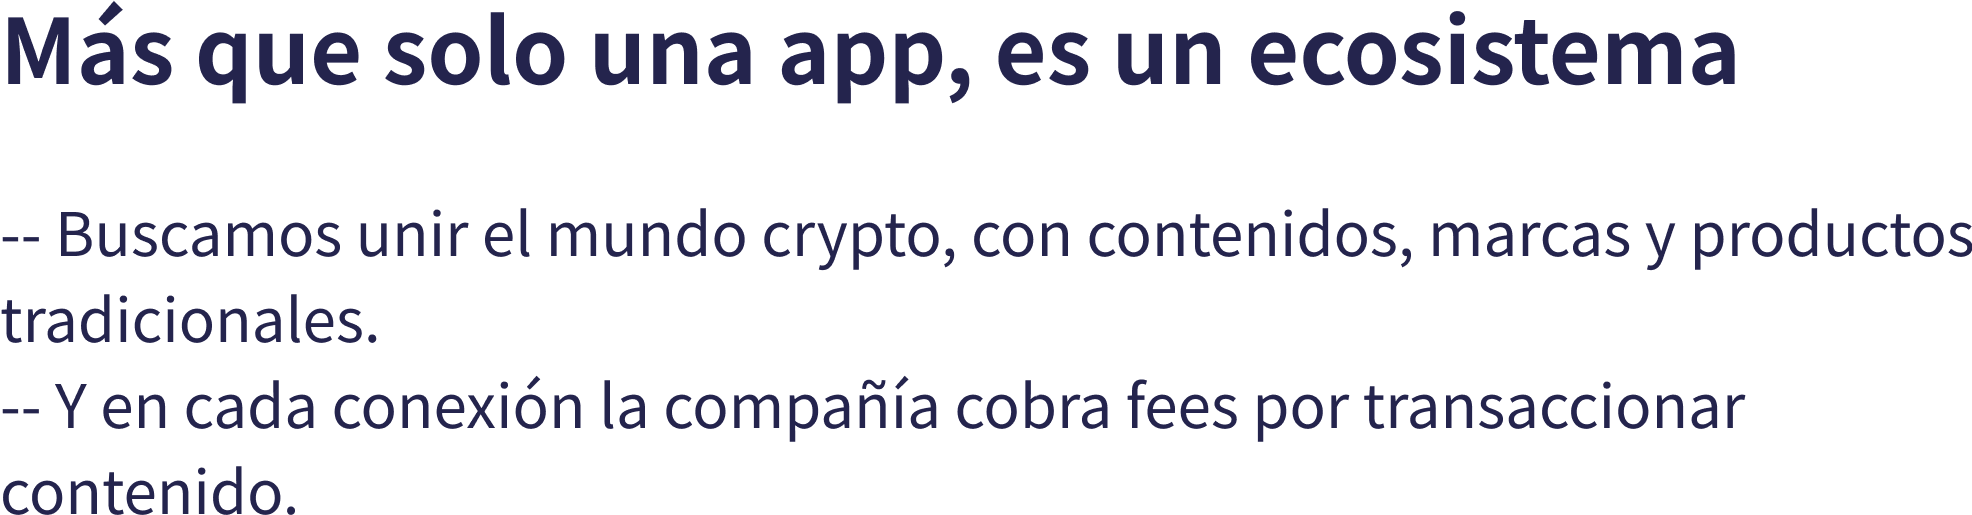 Ms que solo una app, es un ecosistema -- Buscamos unir el mundo crypto, con contenidos, marcas y productos tradicionales. -- Y en cada conexin la compaa cobra fees por transaccionar contenido.